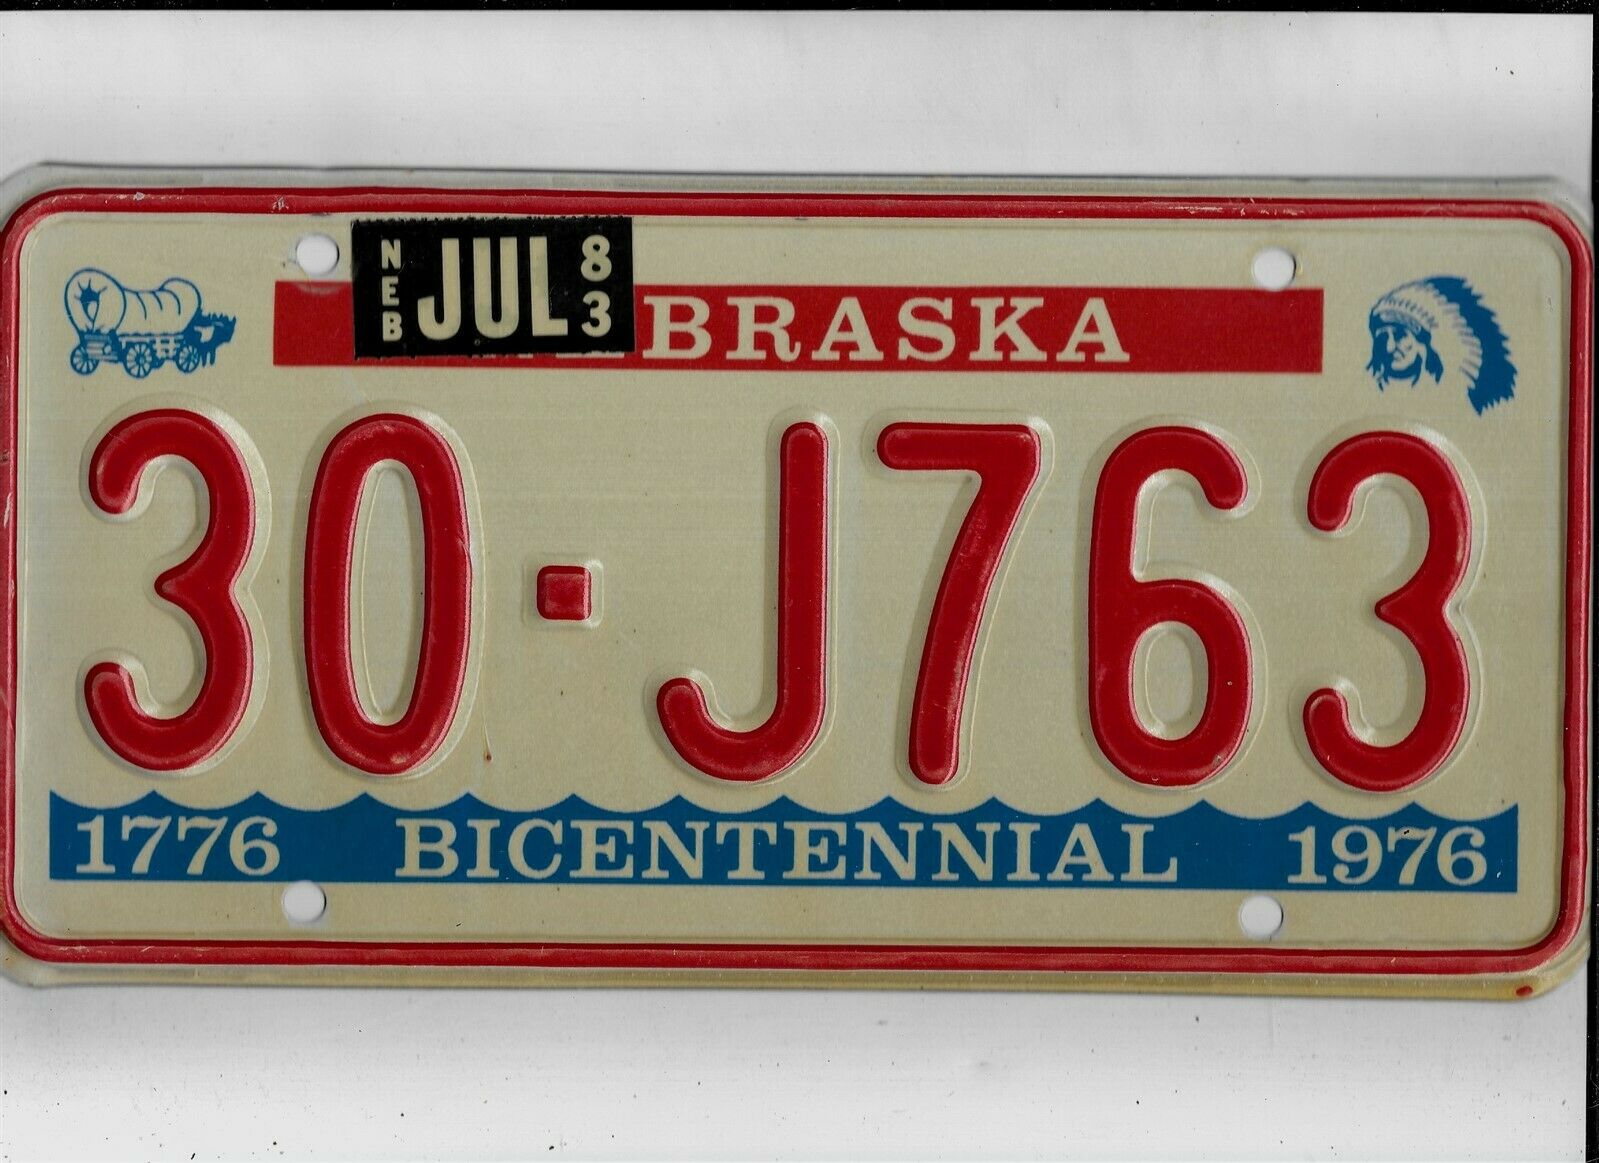 Nebraska Passenger 1983 License Plate "30-j763" ***clay***bicentennial***